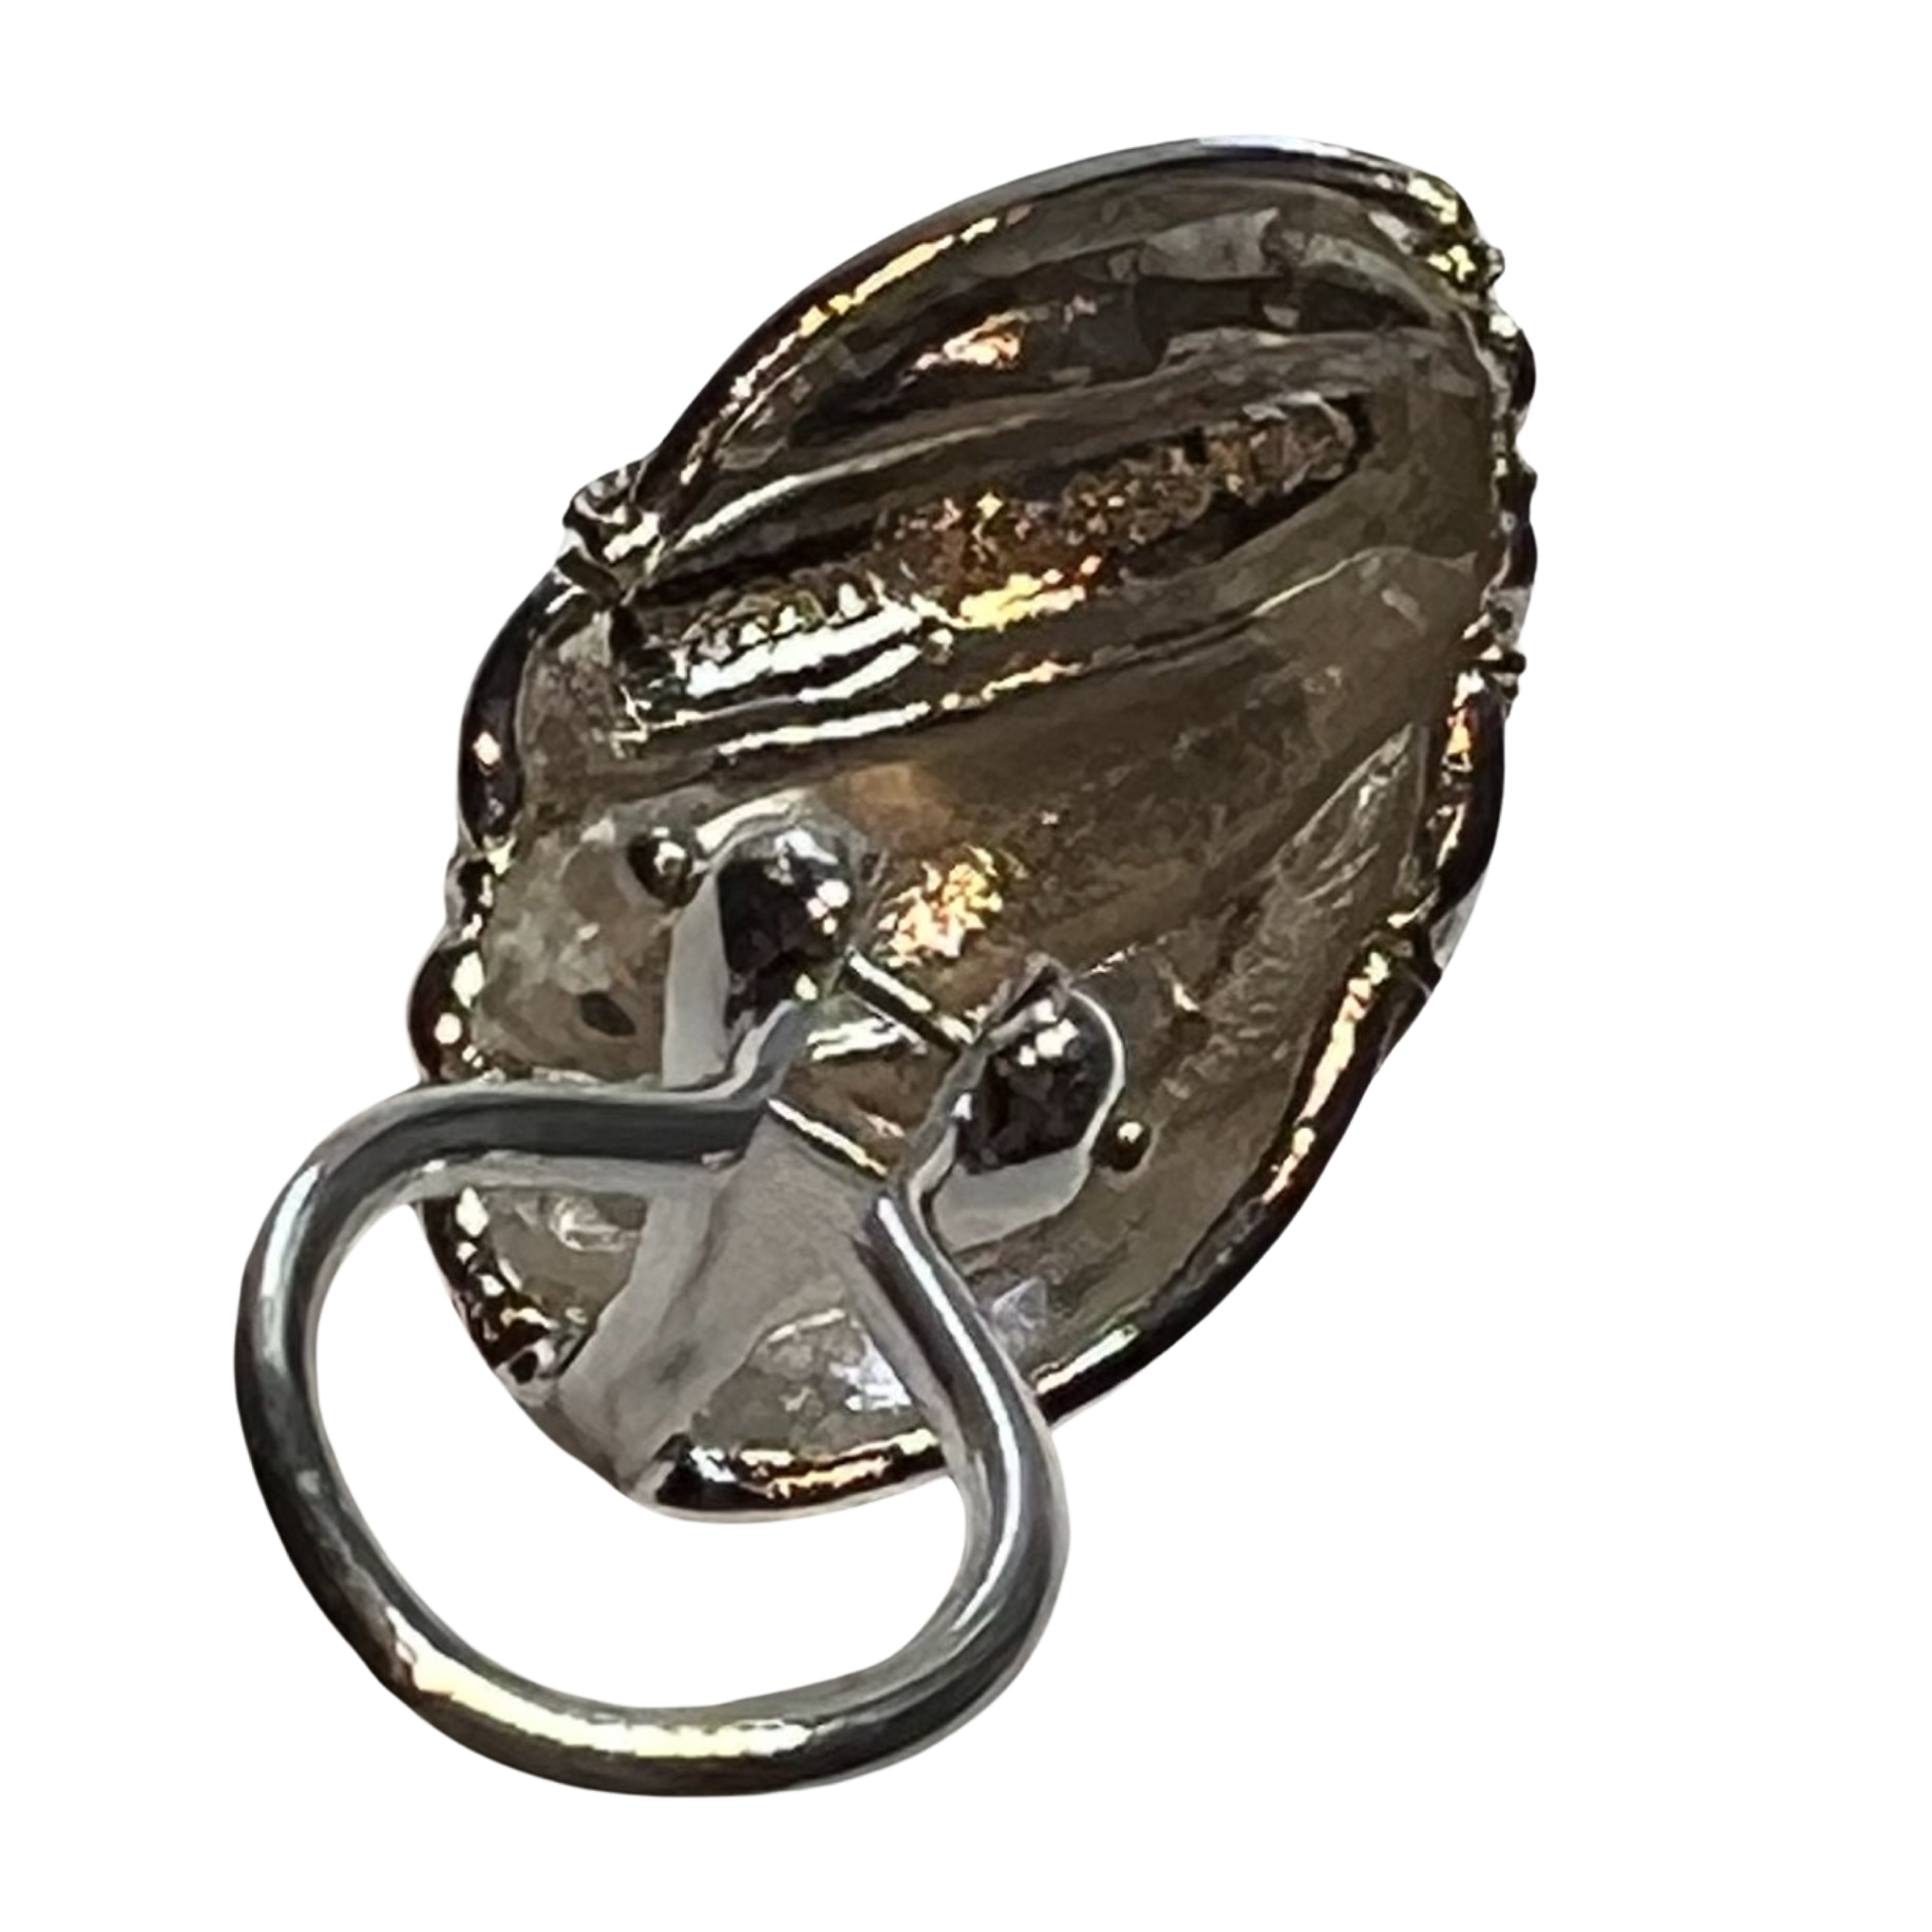 Tiffany & Co Estate Shrimp Earrings 18k Gold + Sterling Silver TIF602 - Certified Fine Jewelry